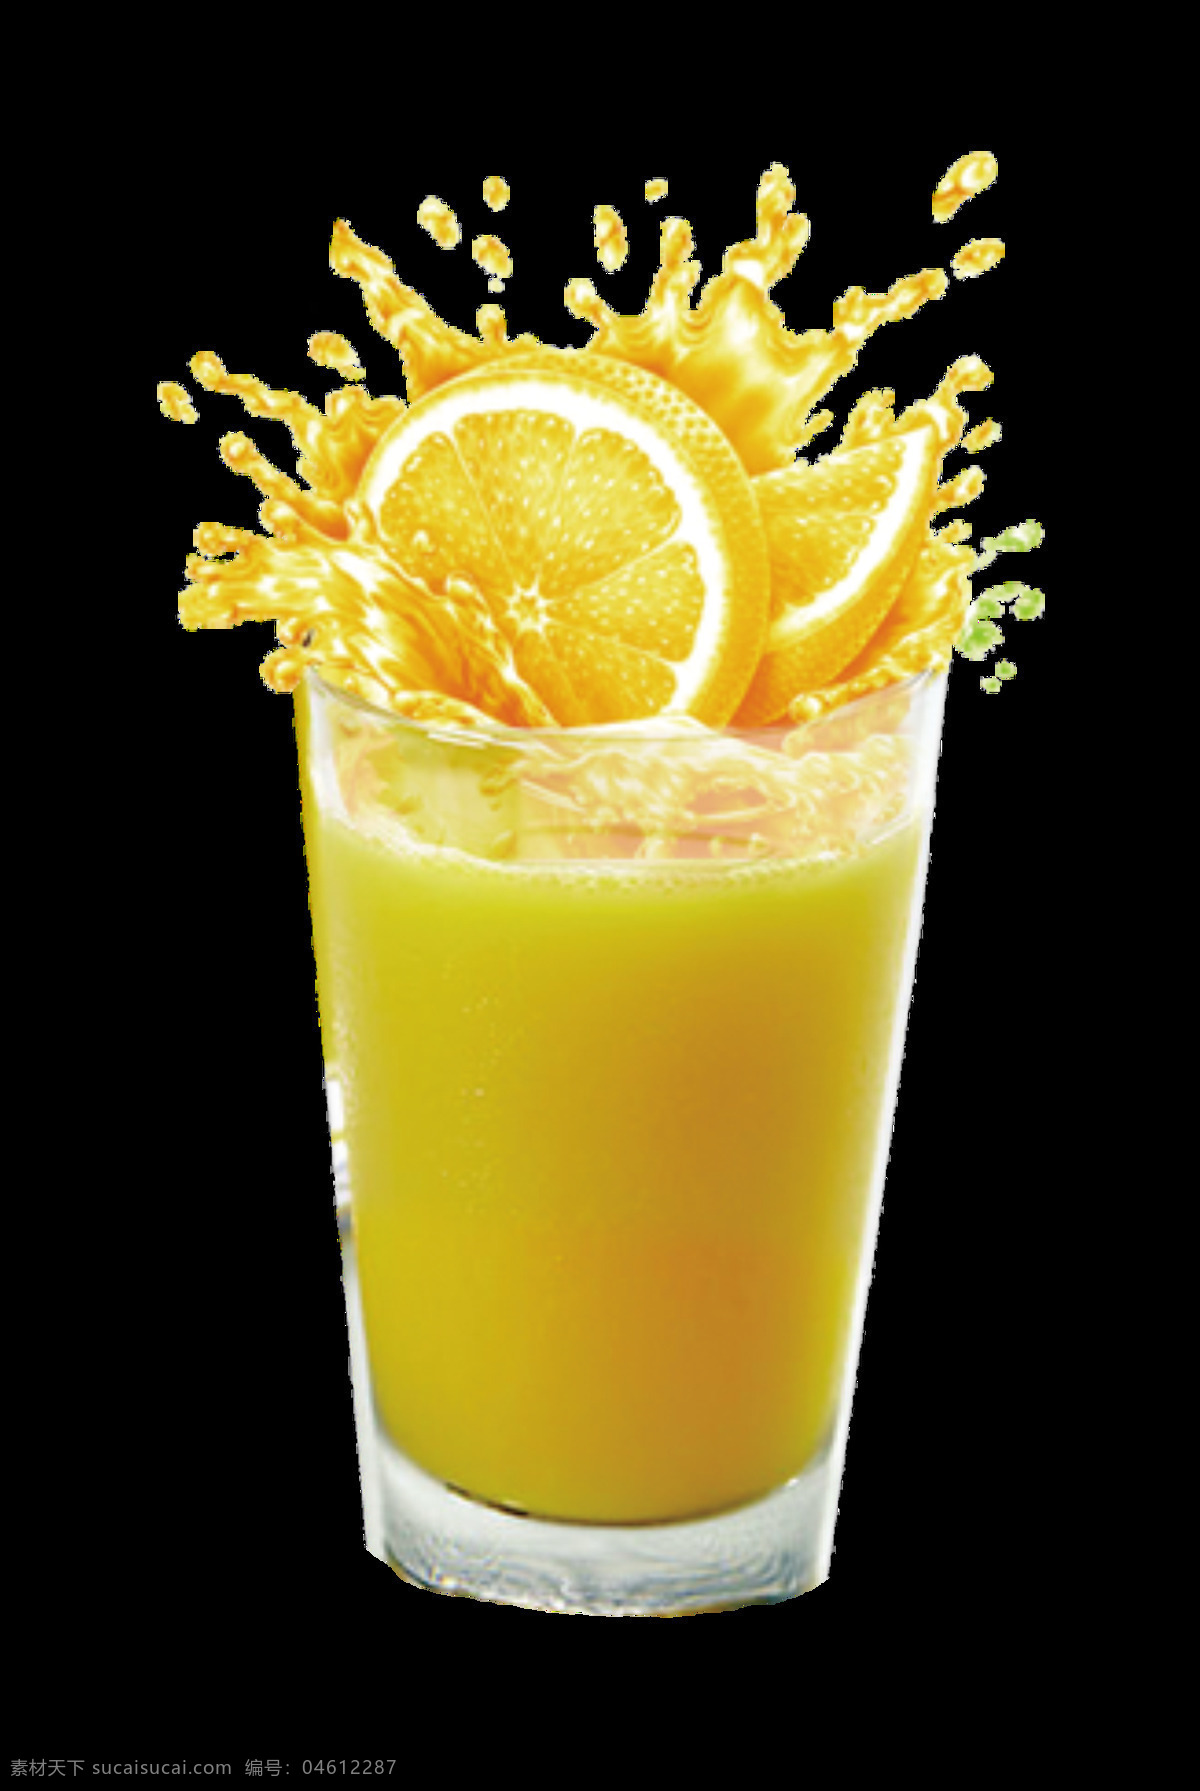 橙汁图片 橙汁 鲜榨果汁 鲜榨橙汁 果粒橙 鲜果汁 鲜橙汁 美食